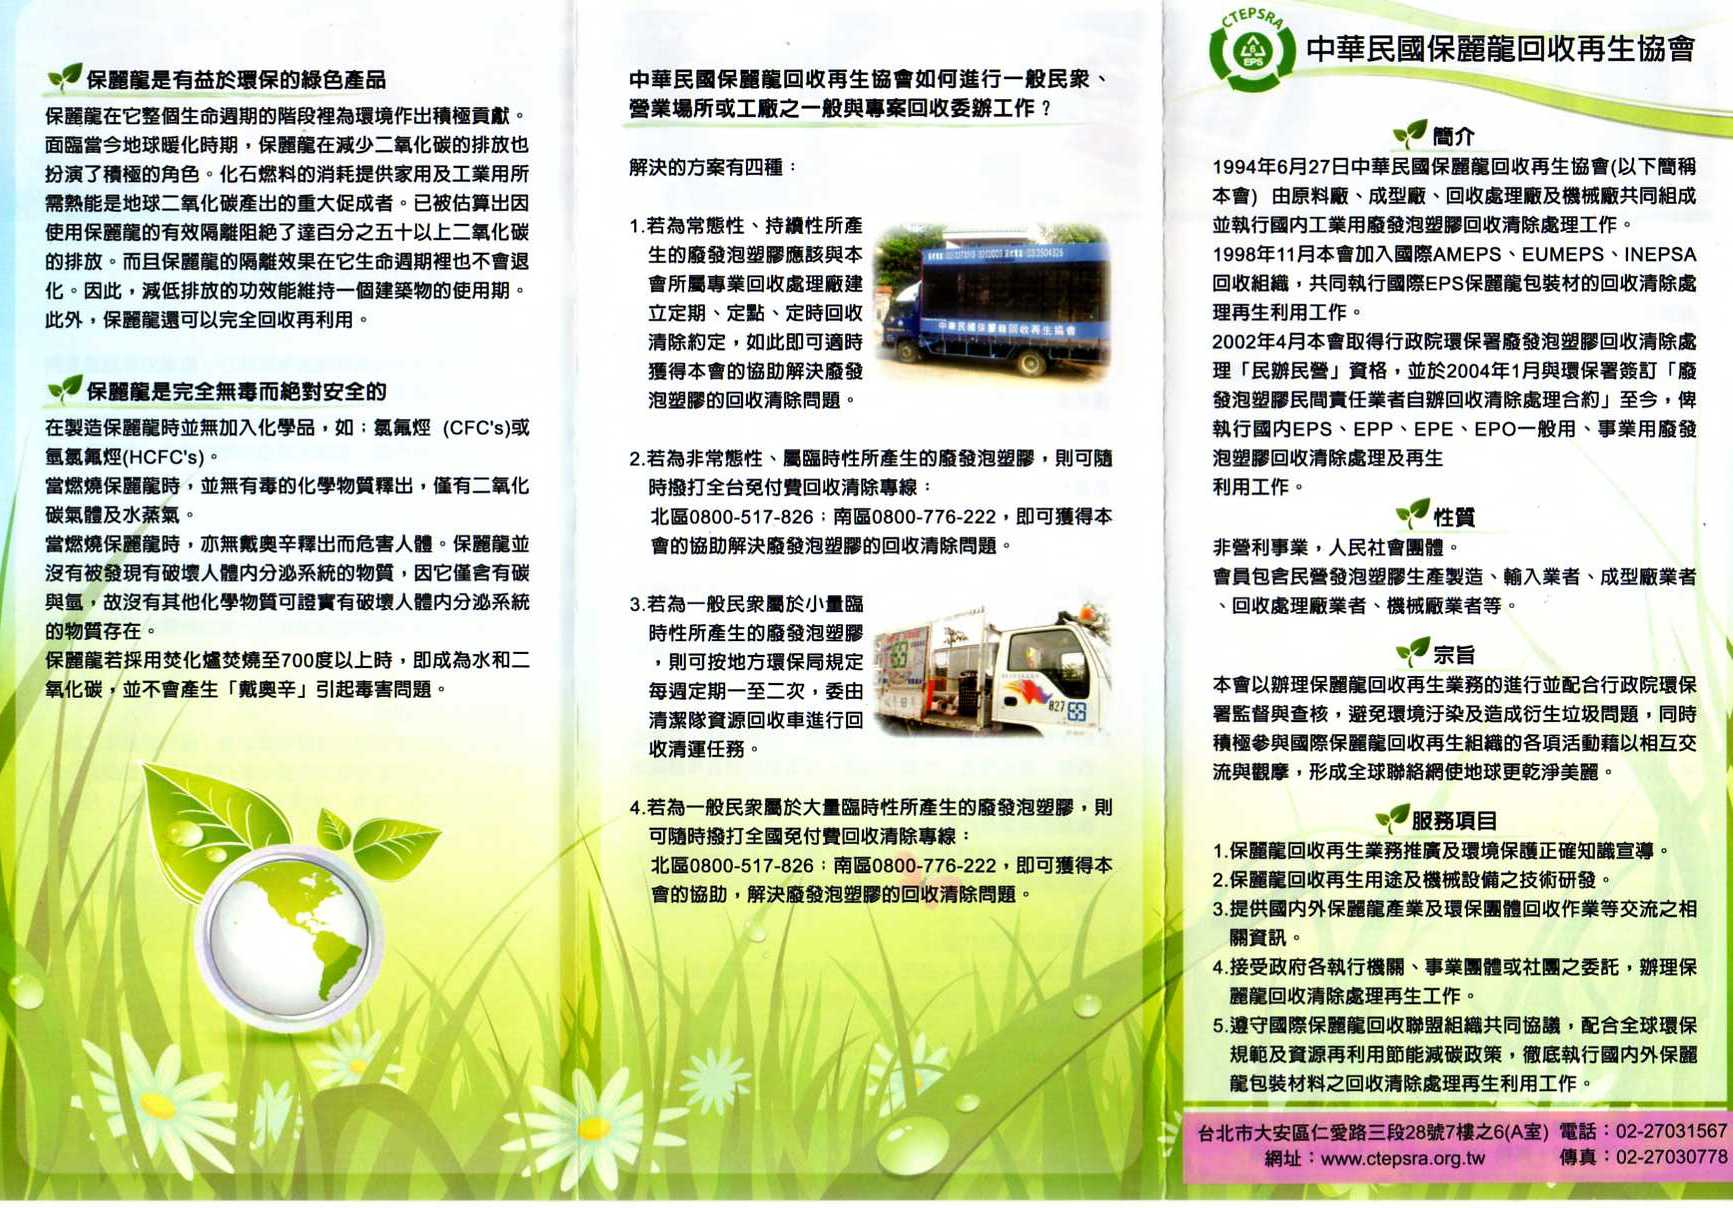 保麗龍是有益於環保的綠色產品